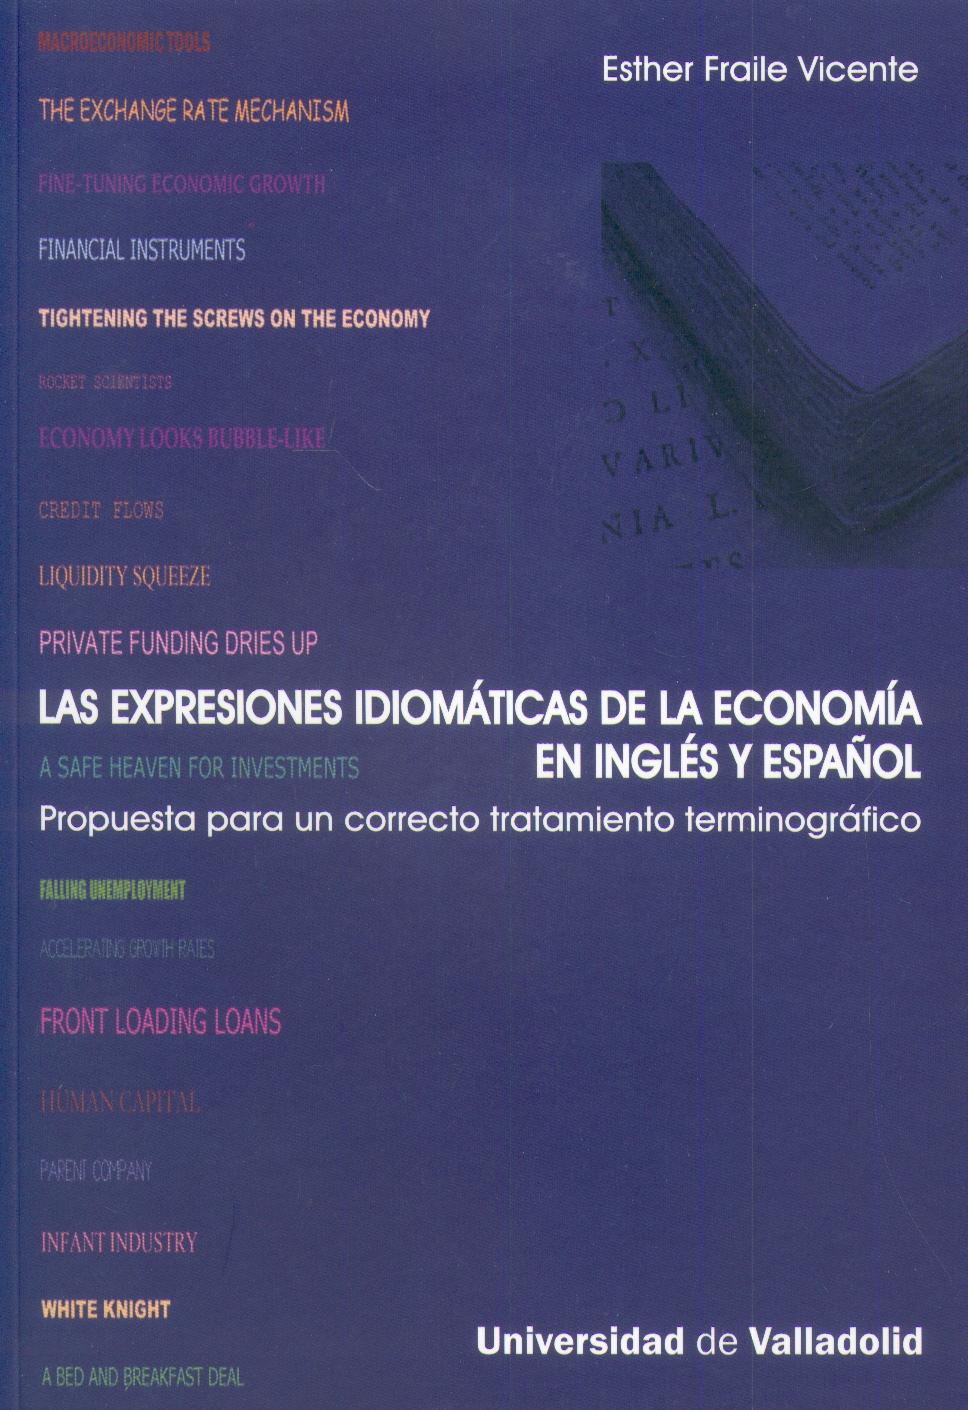 Las Expresiones Idiomaticas de la Economia en Ingles y Español.